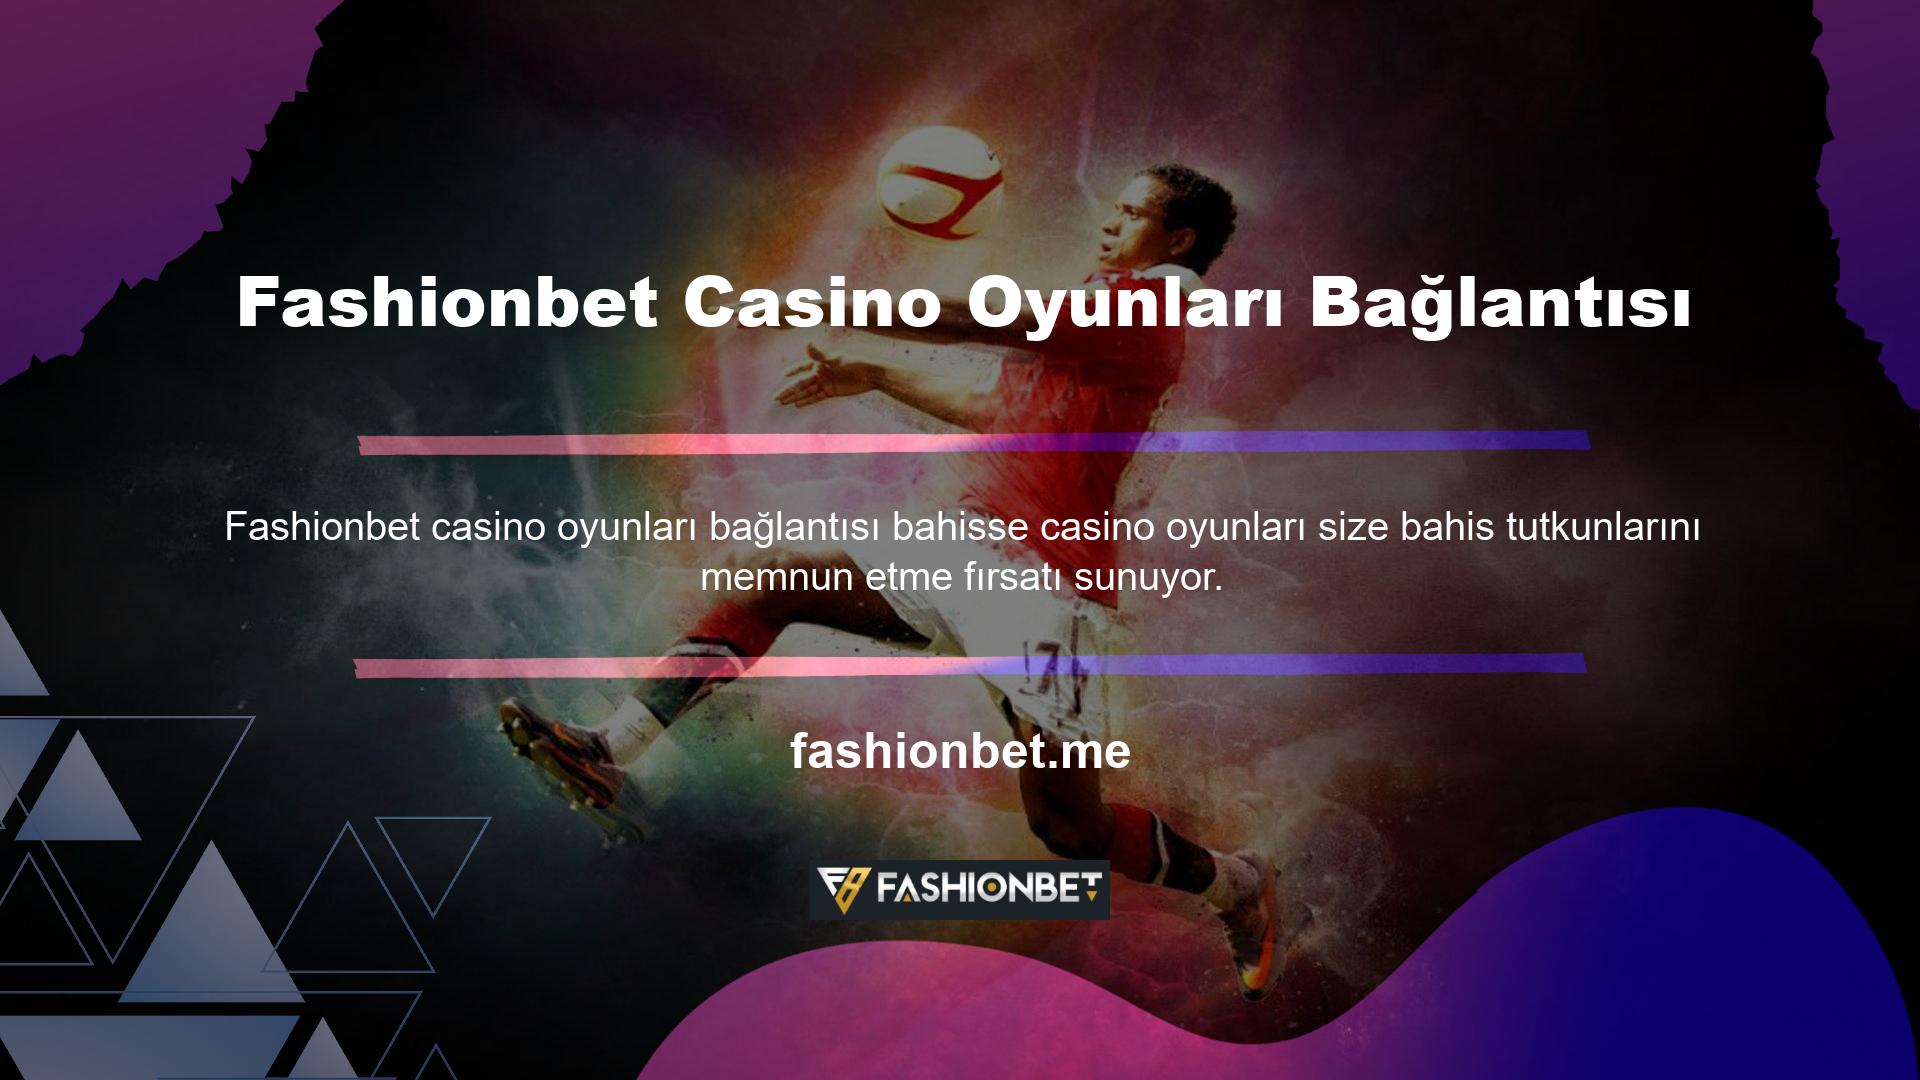 Fashionbet casino oyununa üyelik de bu noktadan itibaren mümkündür